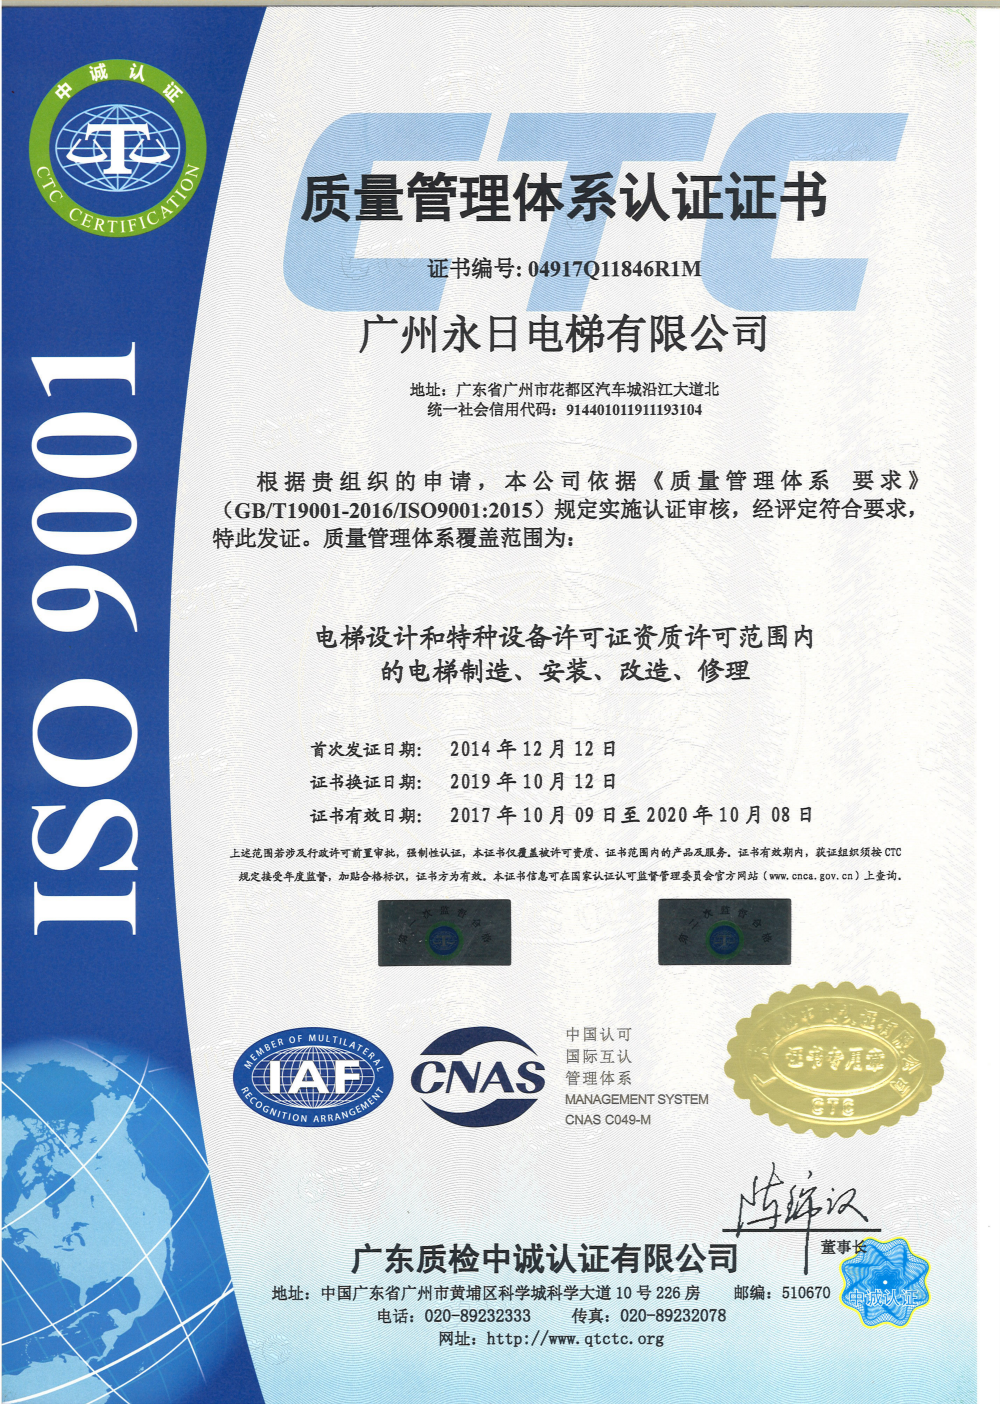 ISO9001体系认证